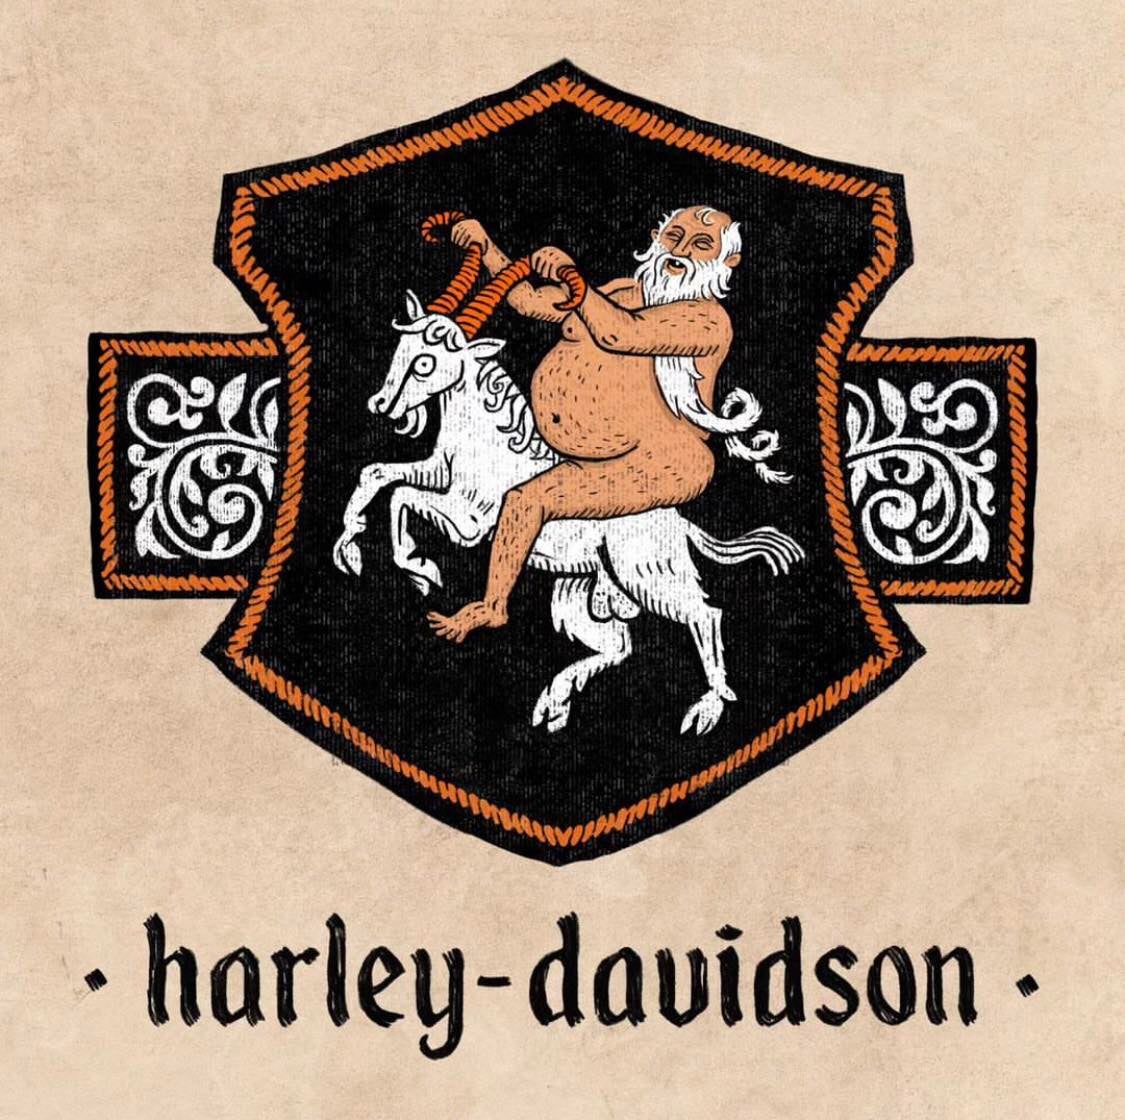 ฮาร์ลีย์-เดวิดสัน (Harley-Davidson) 